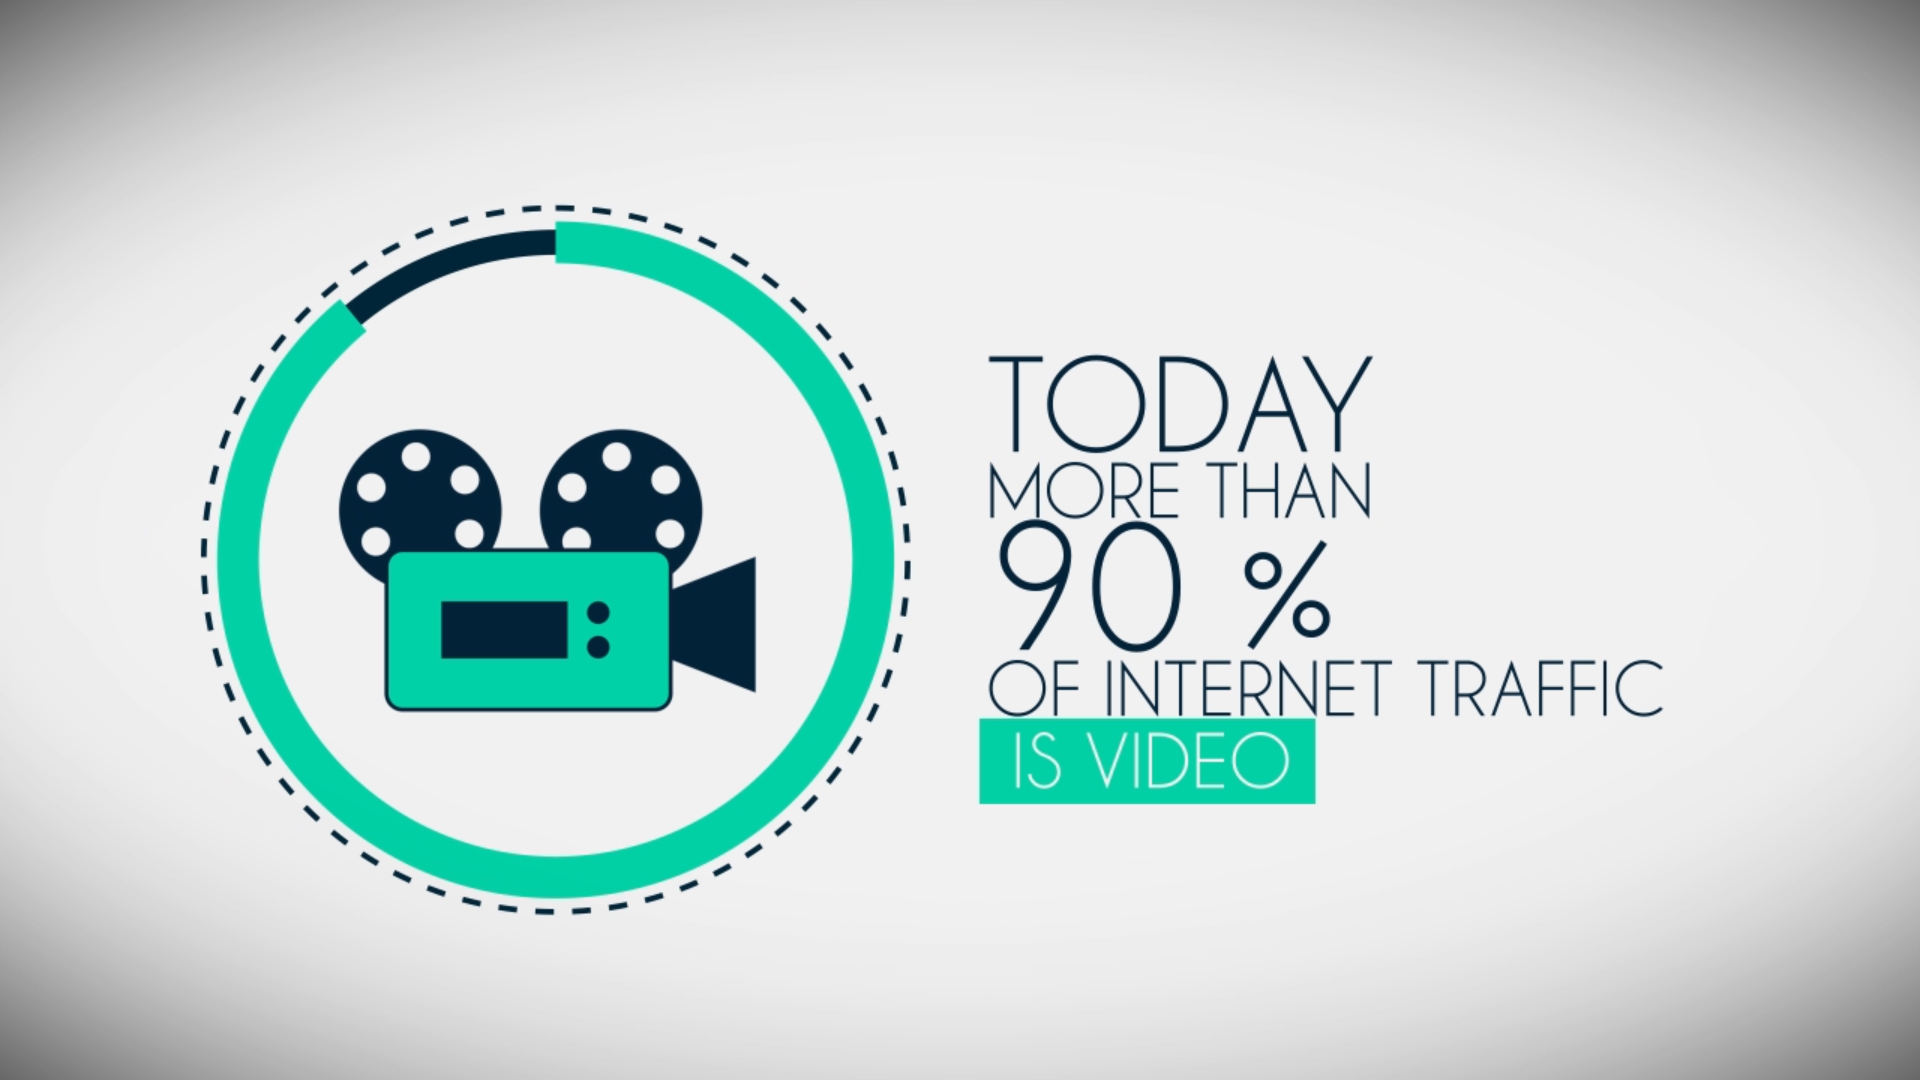 85% mọi người muốn xem nội dung video định hướng thương hiệu, tại sao?